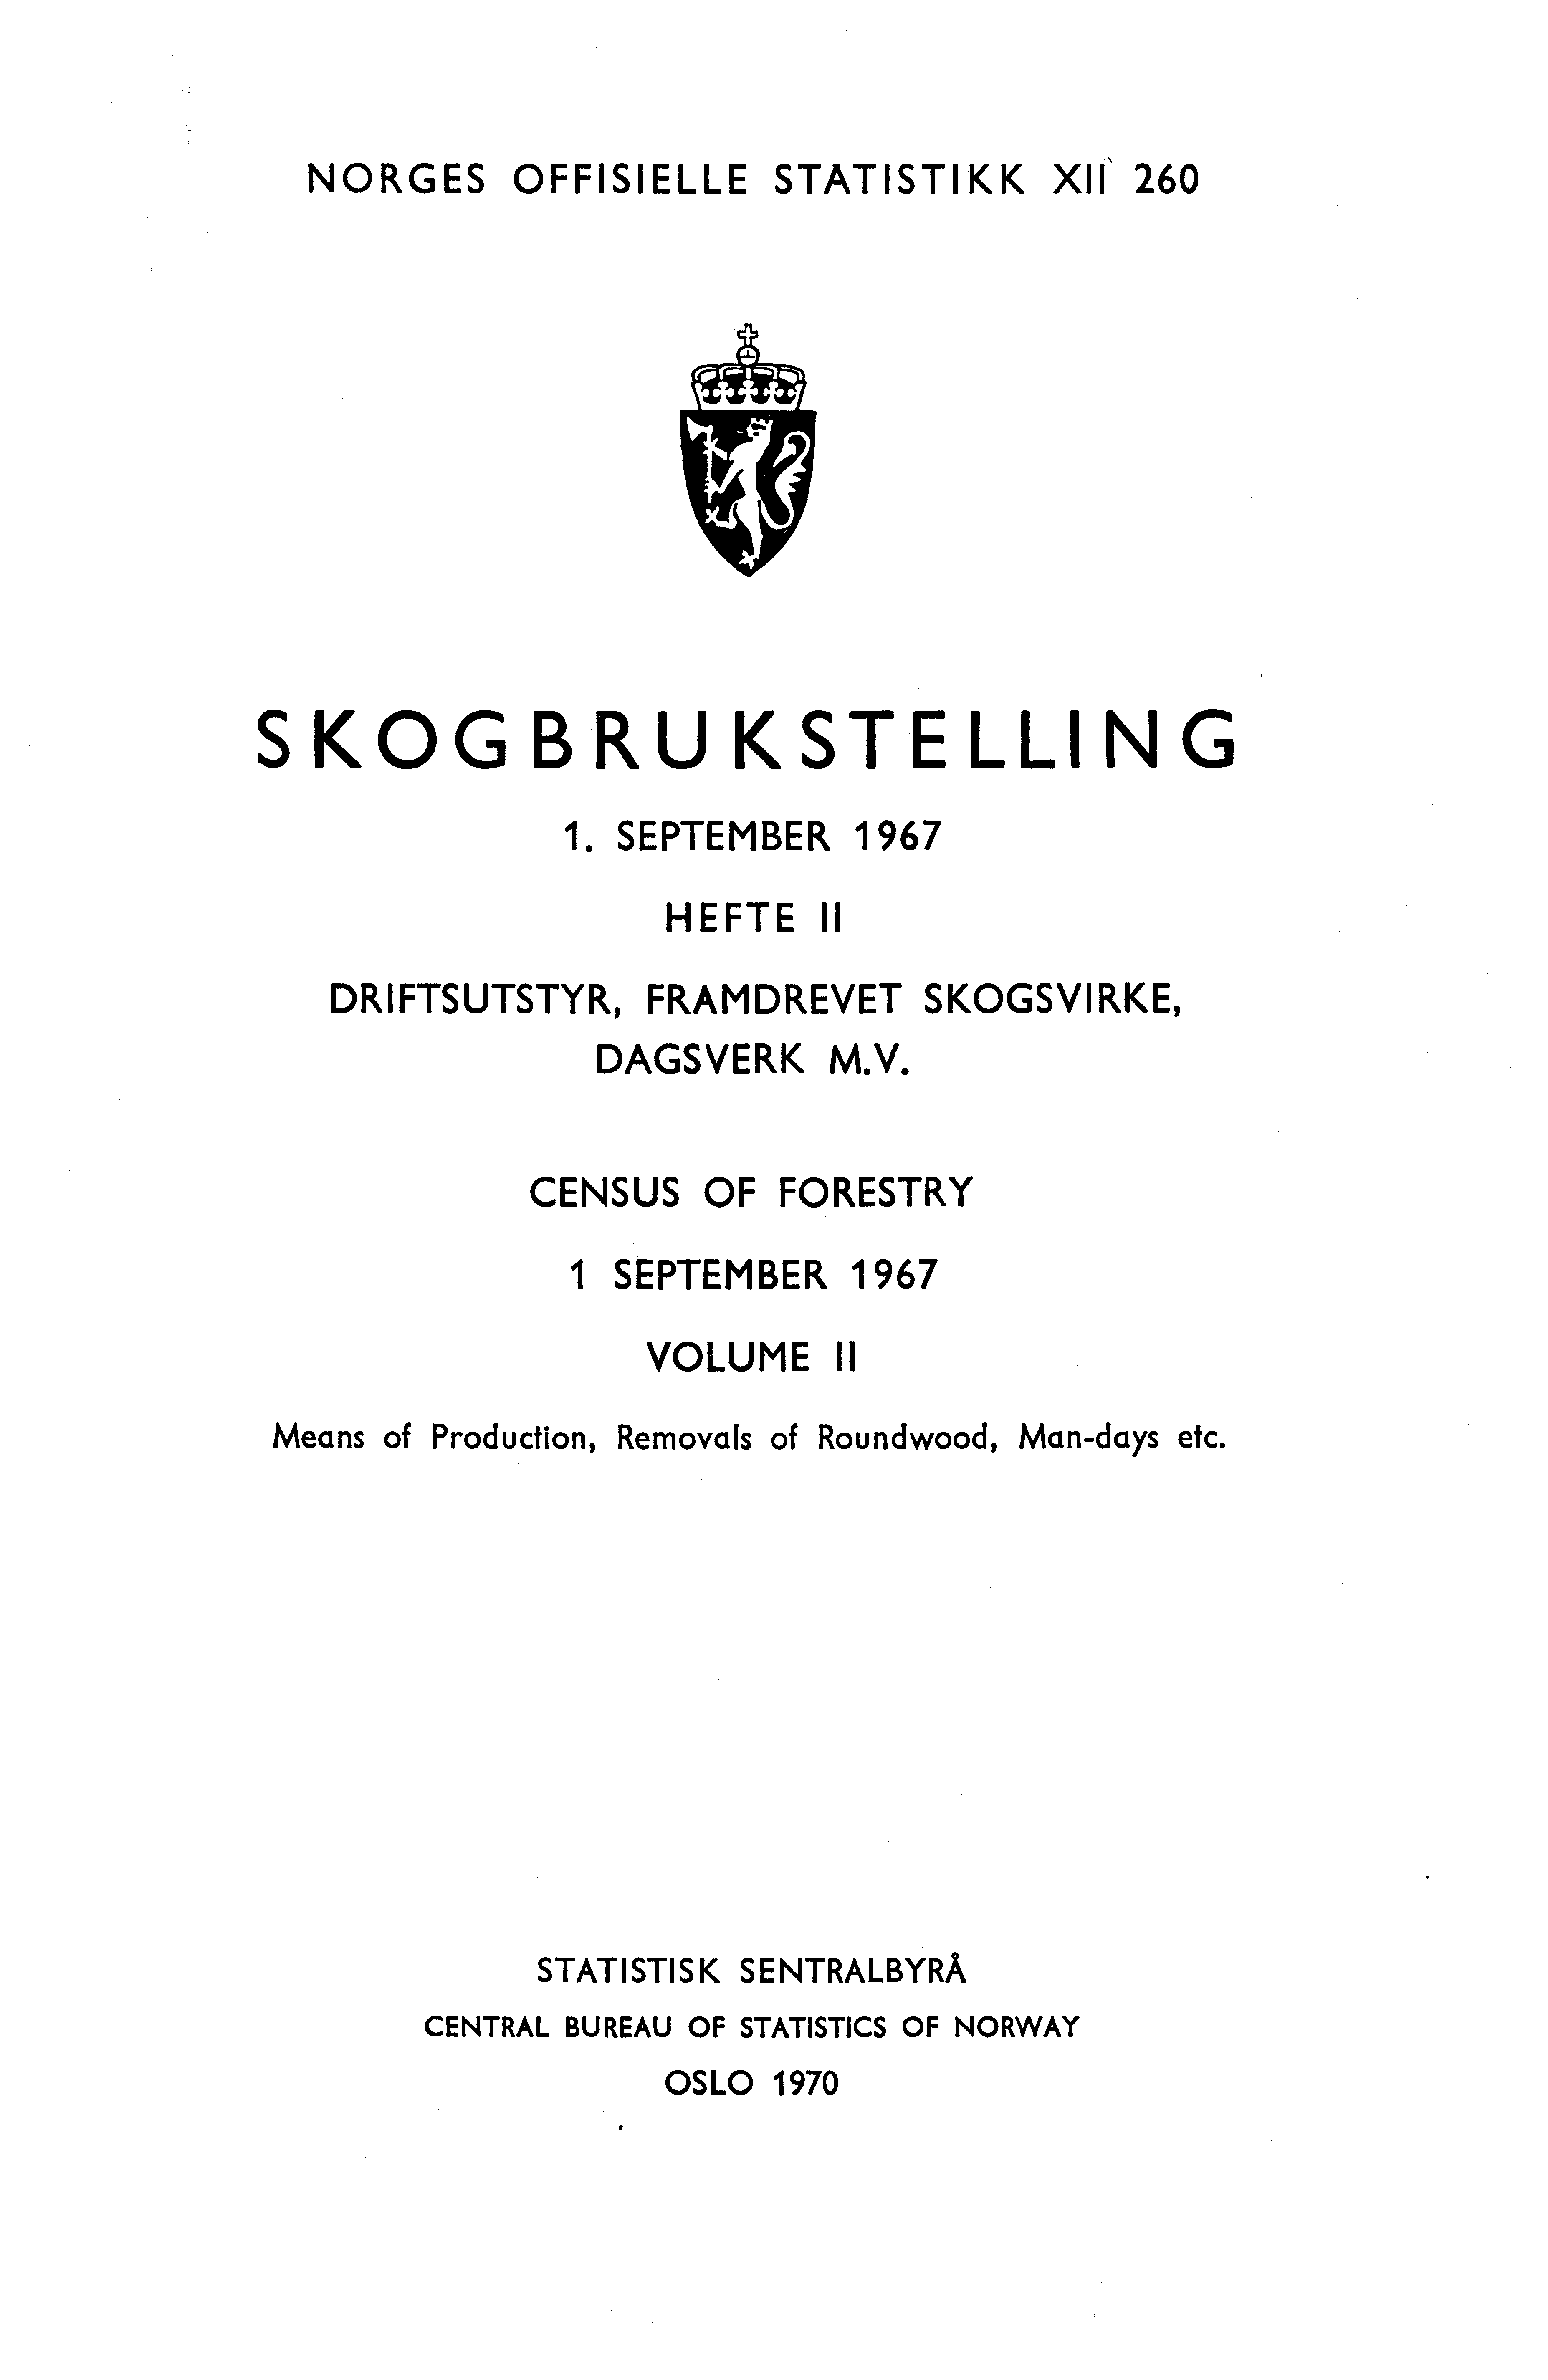 NORGES OFFISIELLE STATISTIKK XII\ 0 SKOGBRUKSTELLING. SEPTEMBER HEFTE II DRIFTSUTSTYR, FRAMDREVE